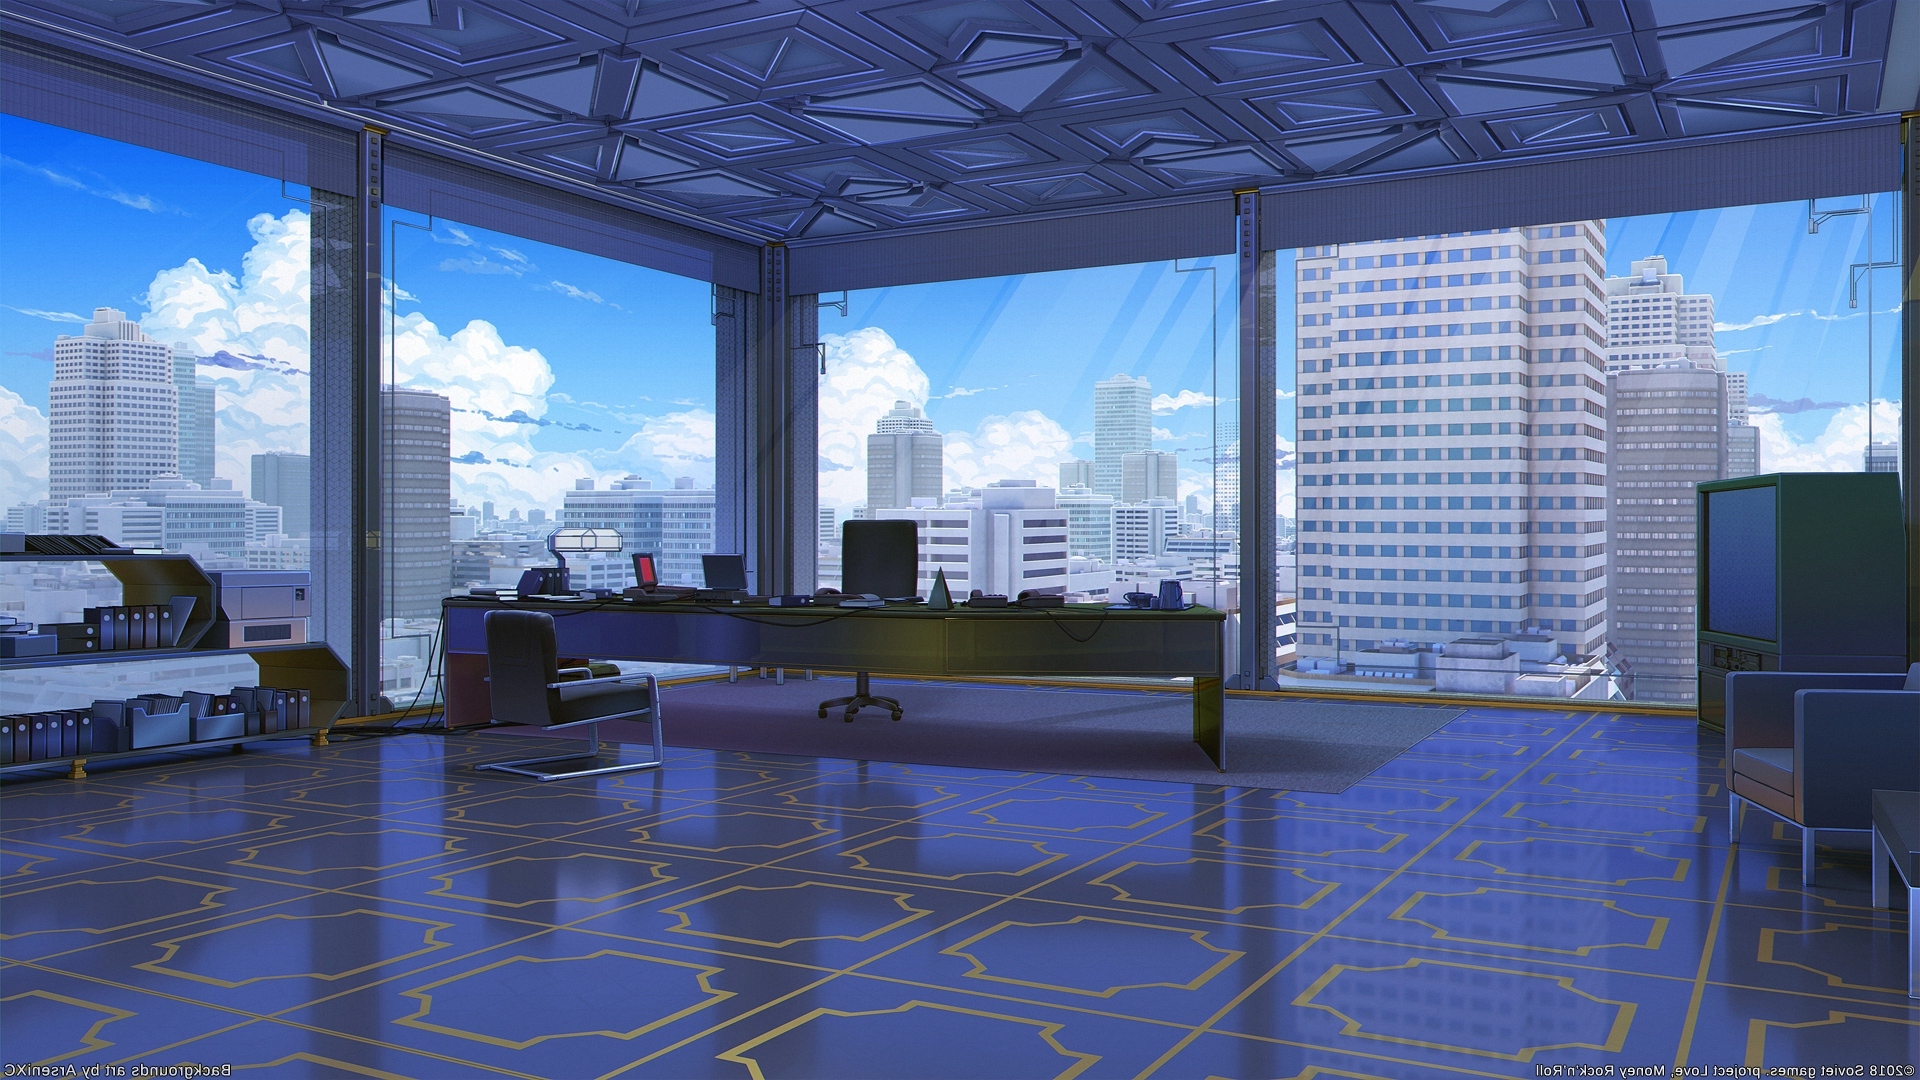 Hình nền anime văn phòng: Hãy khám phá ảnh liên quan đến “hình nền anime văn phòng” để tìm thấy một cách thức thú vị để trang trí không gian làm việc của bạn. Với các nhân vật anime cực kỳ đáng yêu được sáng tạo tỉ mỉ, bạn sẽ cảm thấy thoải mái và thư giãn hơn trong thời gian làm việc và tạo ra sự tươi mới cho căn phòng của bạn.